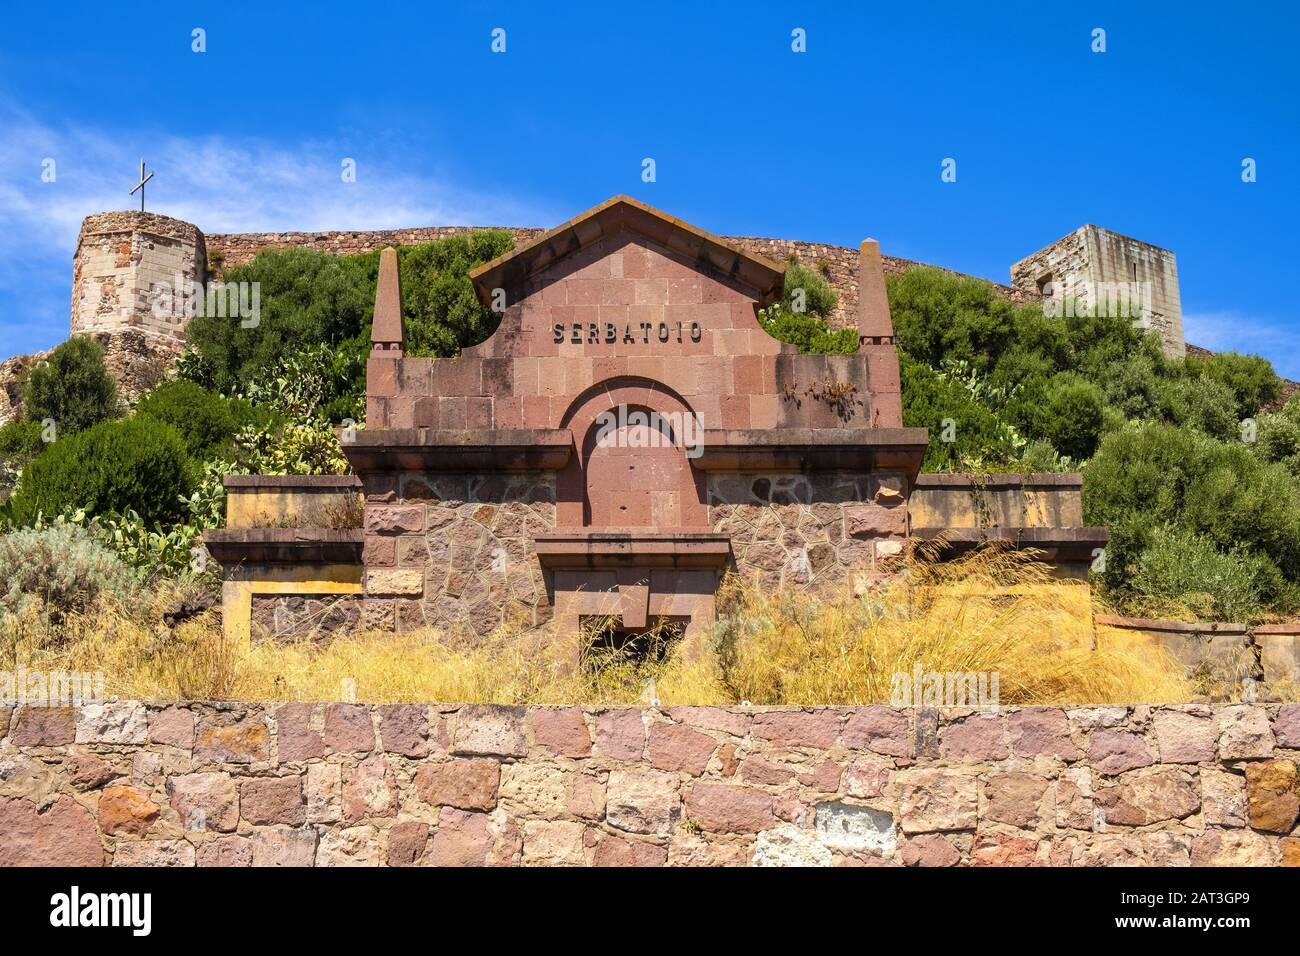 Bosa, Sardinien/Italien - 2018/08/13: Hügel der Burg Malaspina - auch bekannt als Schloss von Serravalle - mit monumentaler Fassade des historischen Wasserreservoirs Serbatoio di Bosa Stockfoto